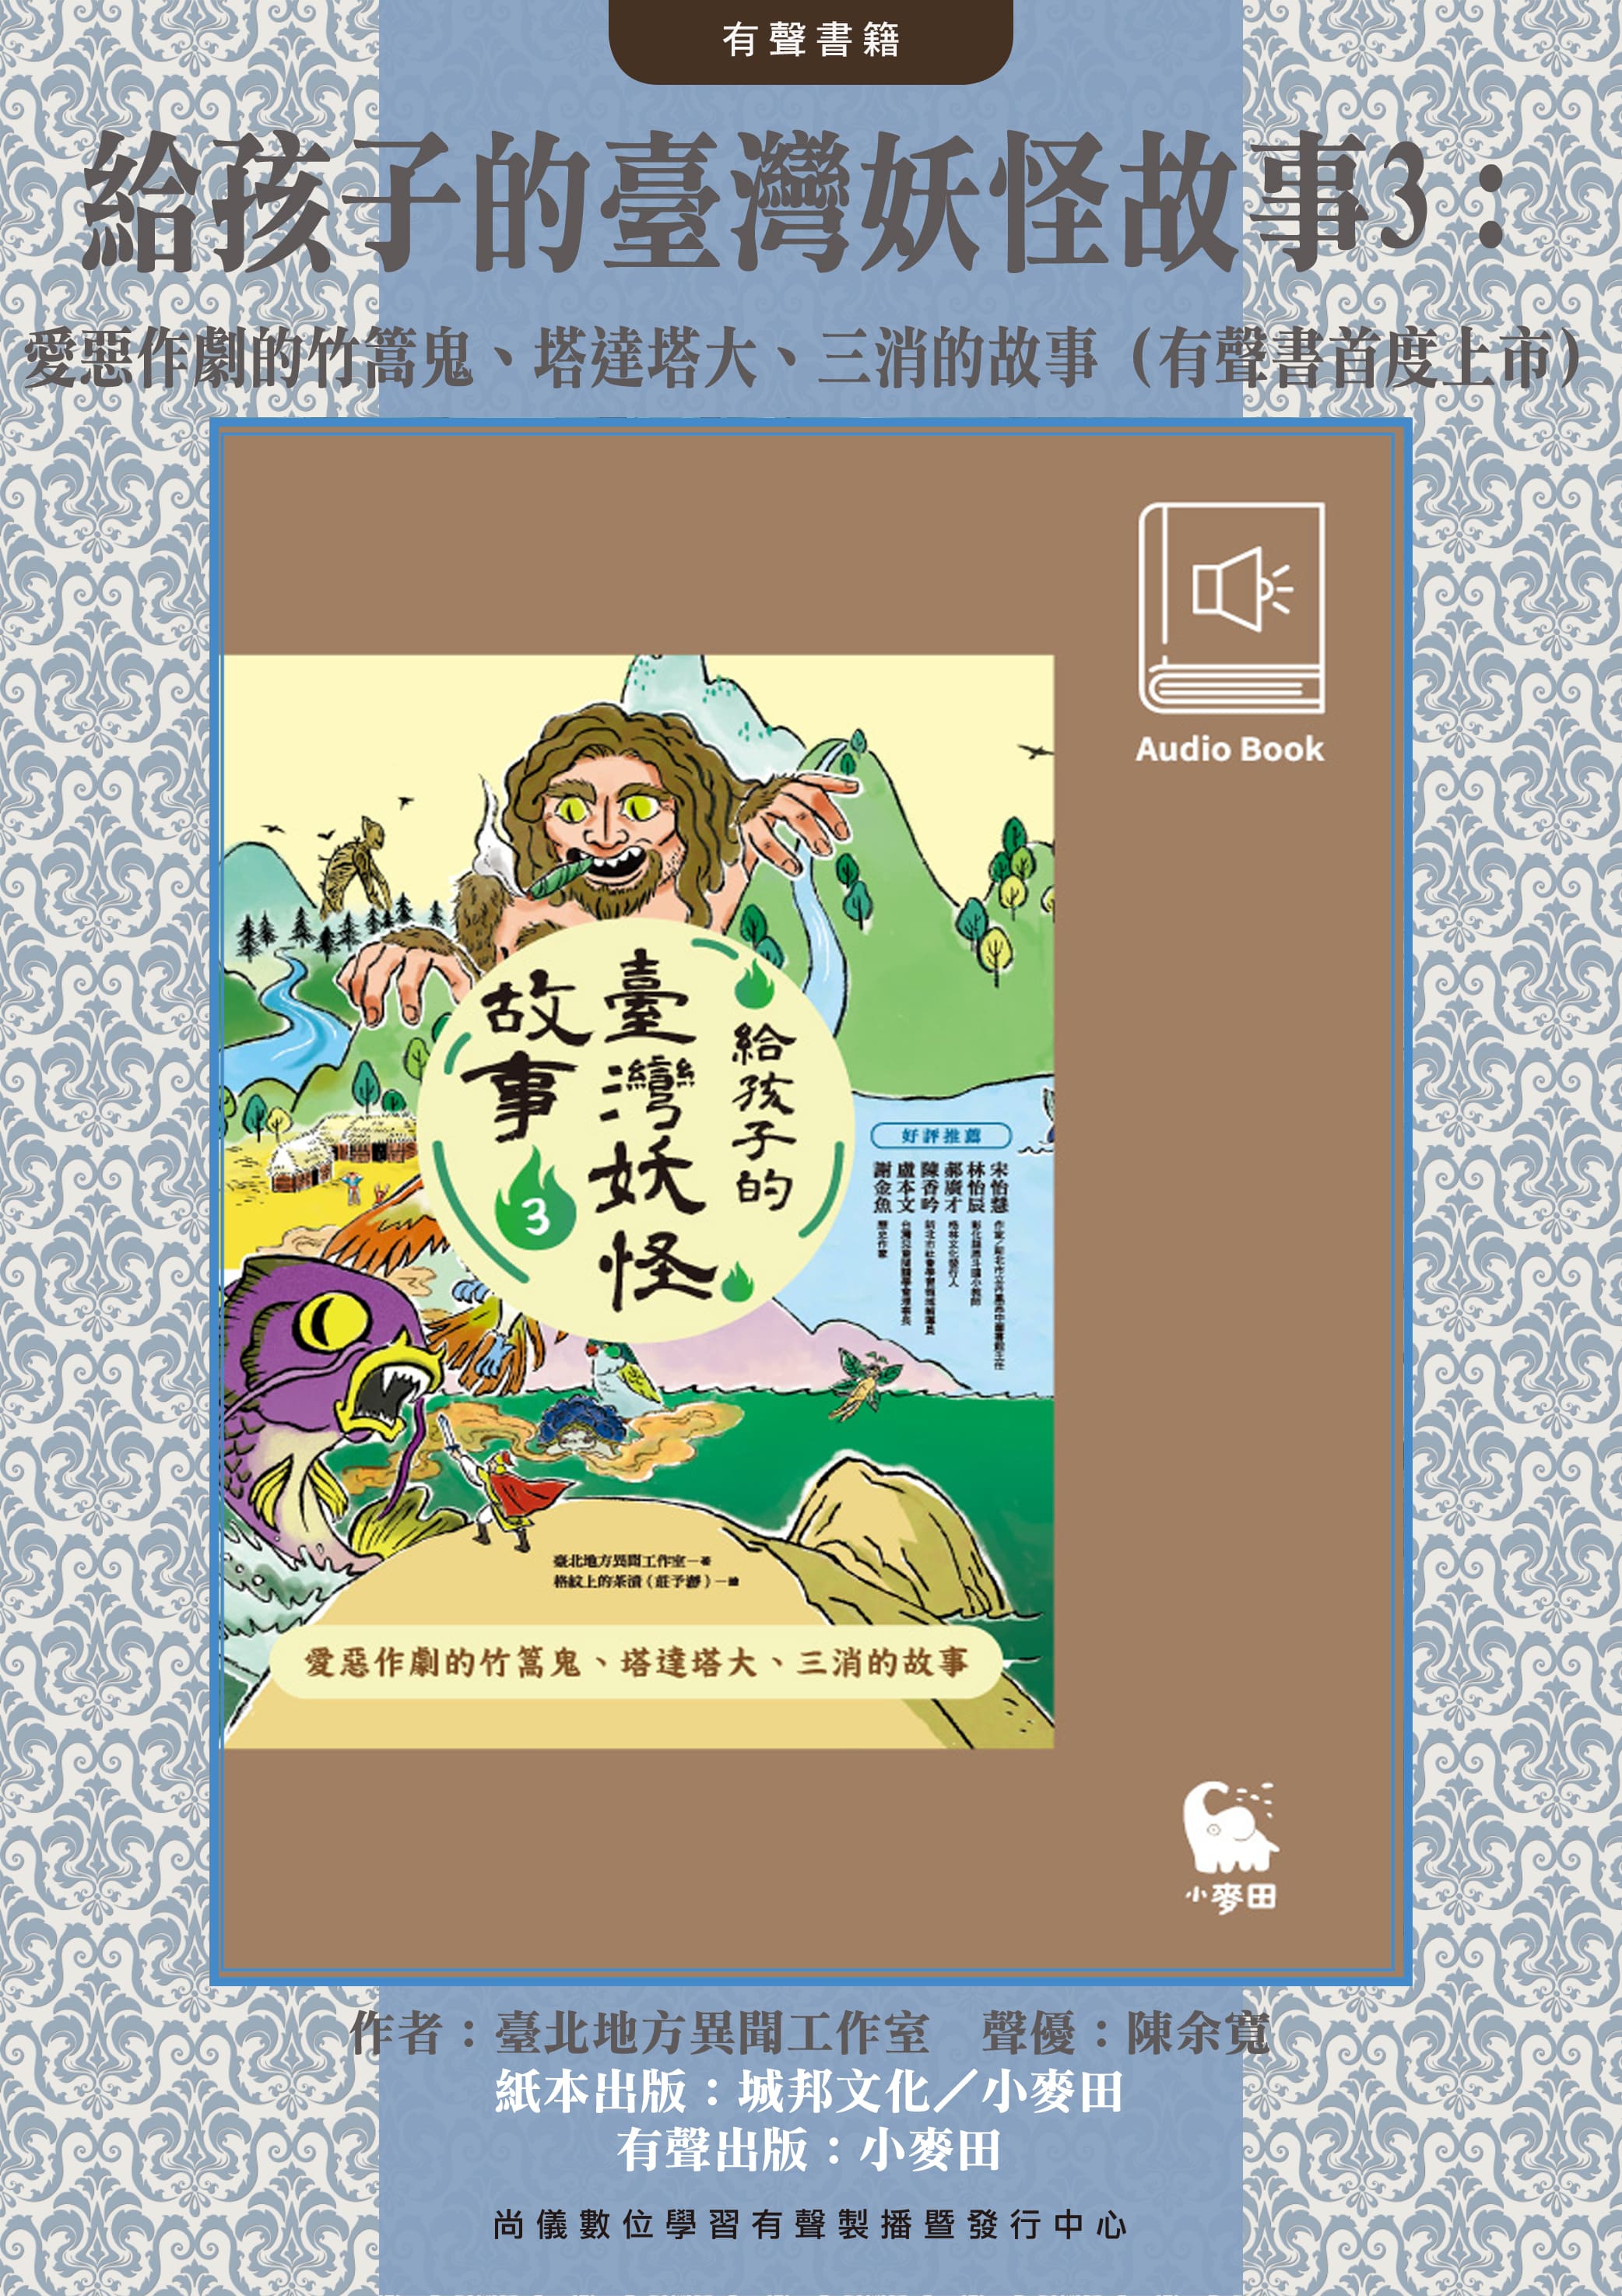 給孩子的臺灣妖怪故事3：愛惡作劇的竹篙鬼、塔達塔大、三消的故事（有聲書首度上市）封面圖